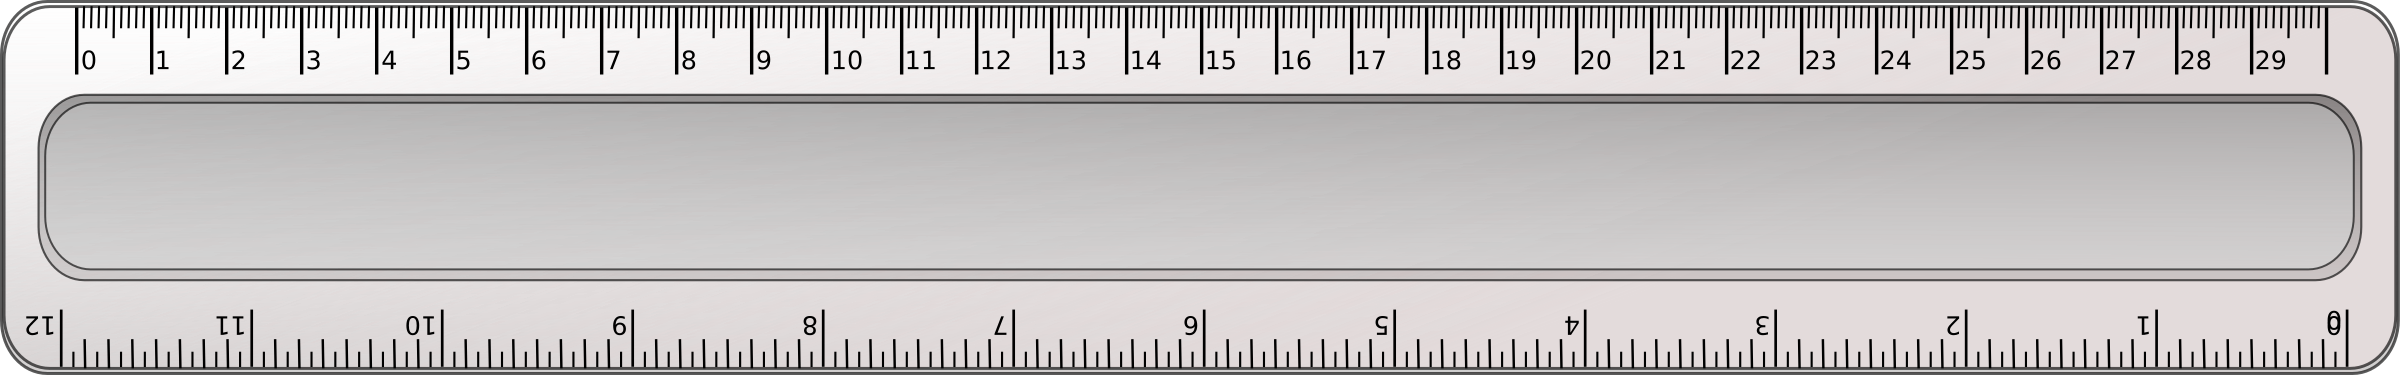 clipart ruler long ruler